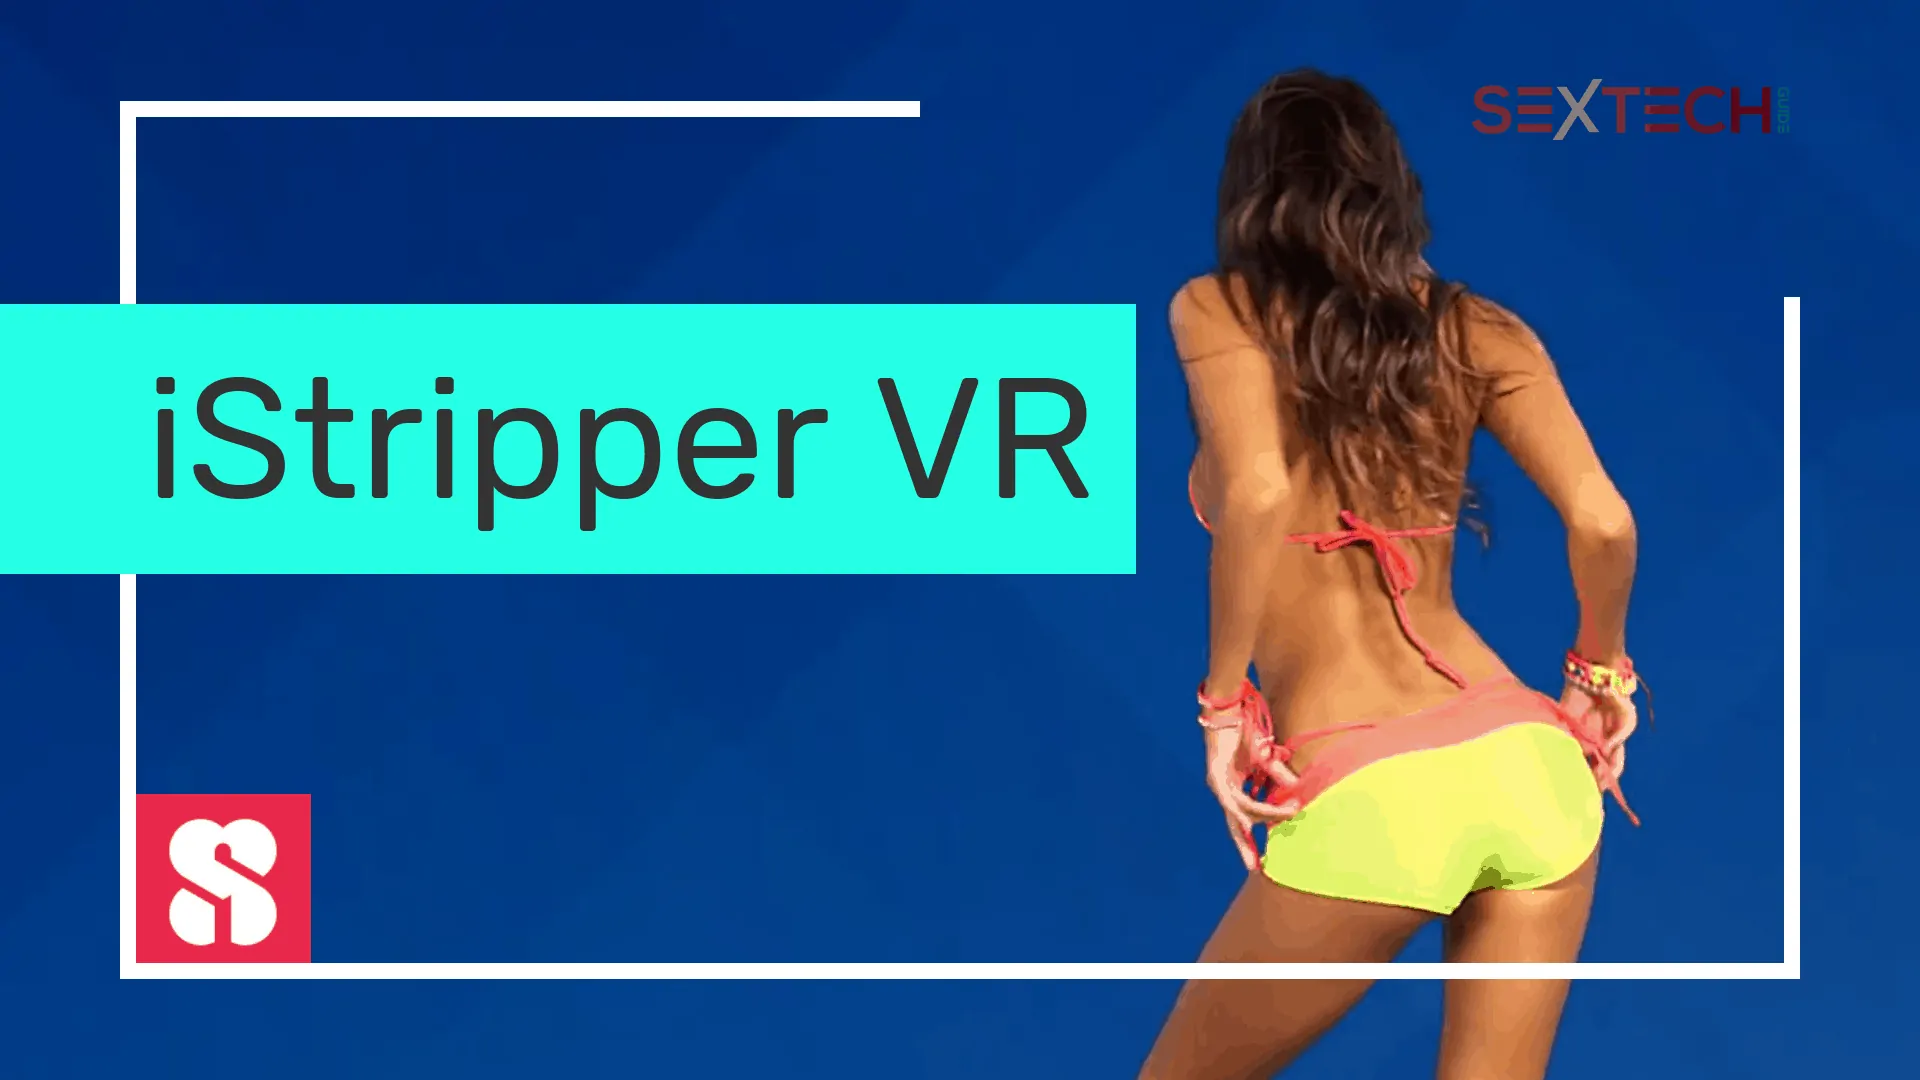 A woman in a bikini featuring an iStripper VR experience.